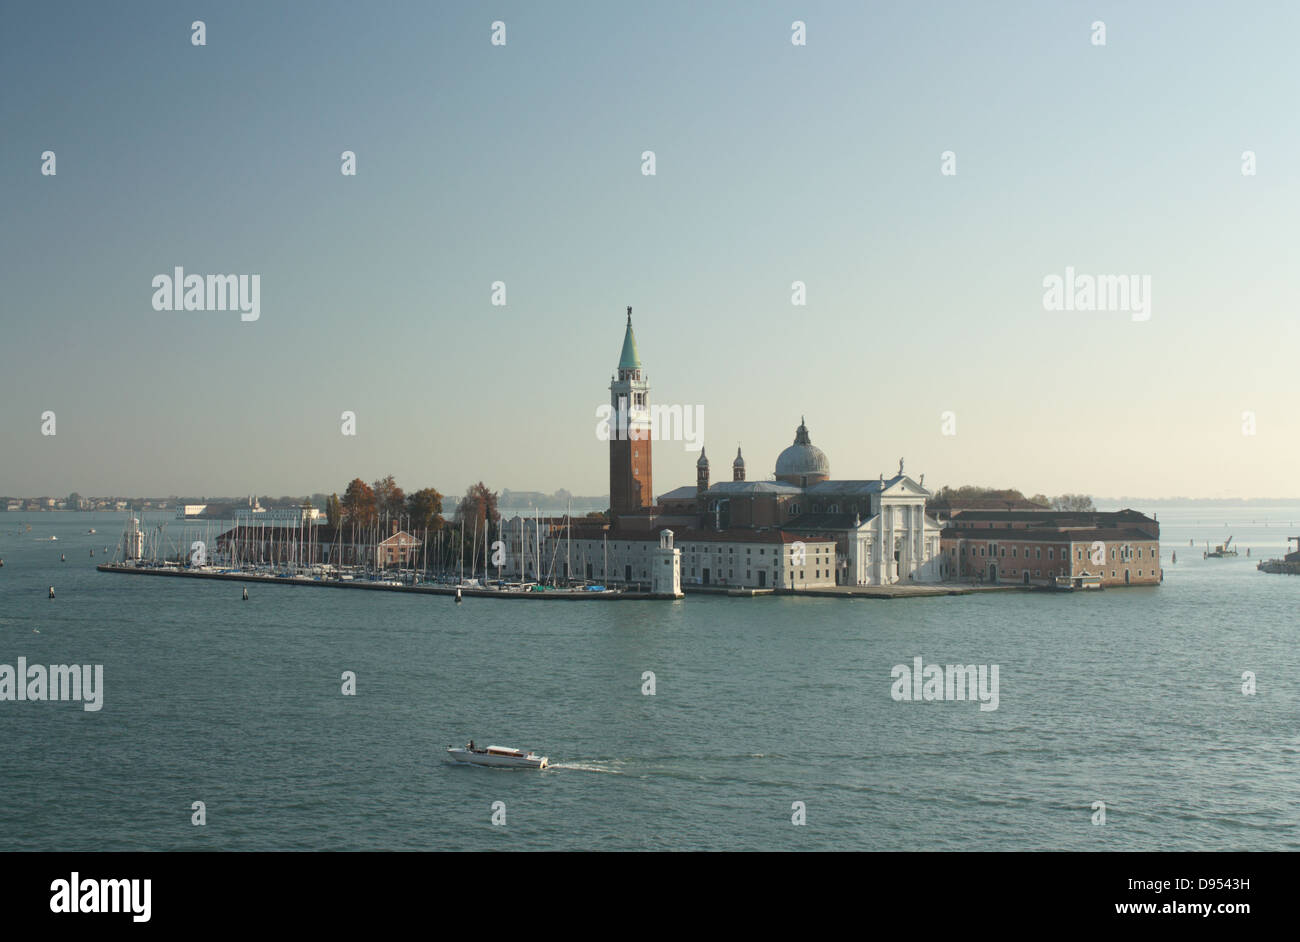 San Giorgio Maggiore Island, Venice Stock Photo - Alamy